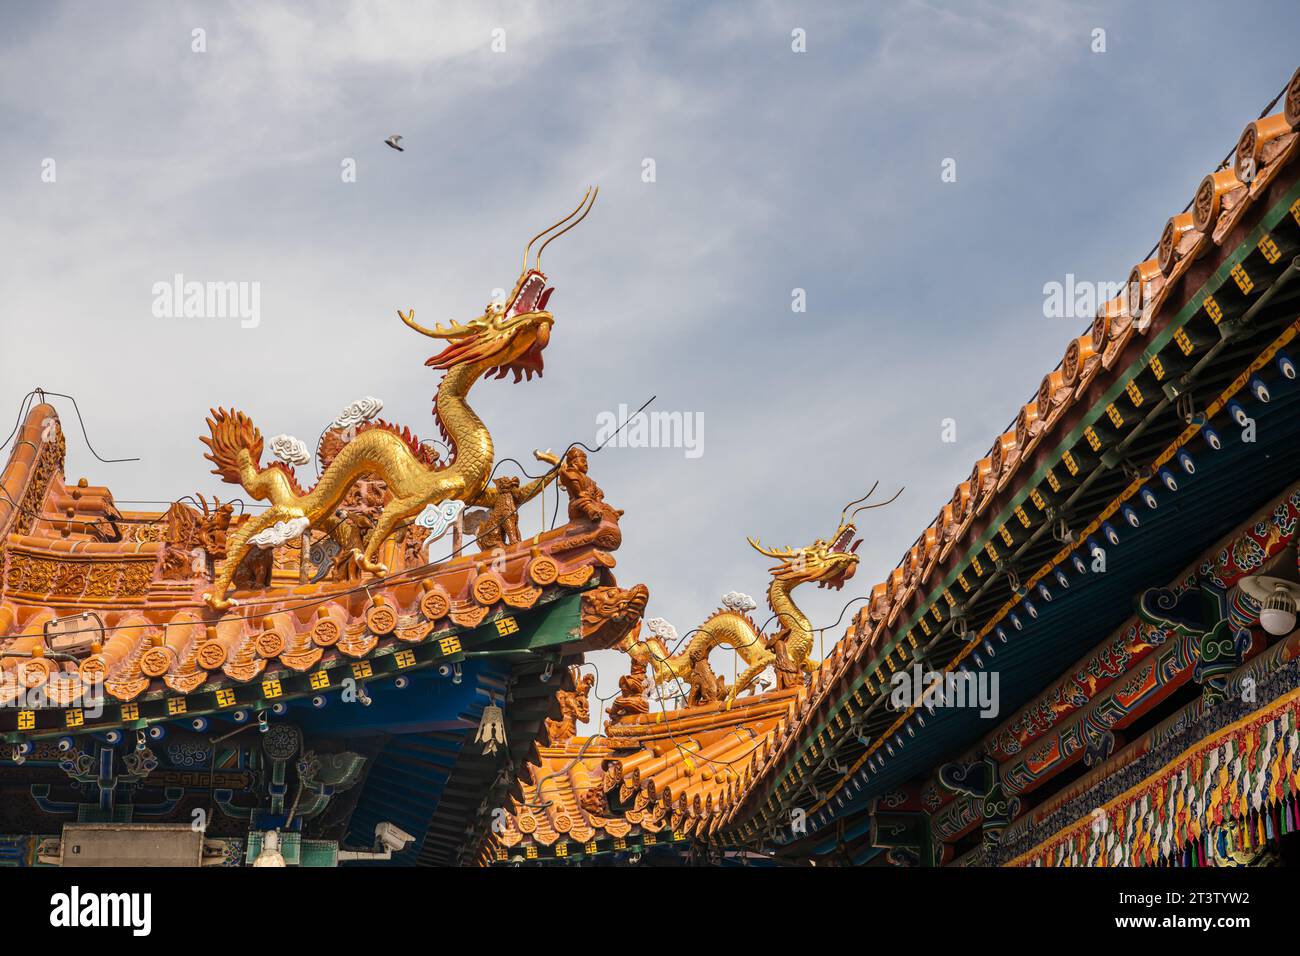 Les dragons décorent sur le toit du temple Da Zhao ou Wuliang, un monastère bouddhiste tibétain de l'ordre Gelugpa à Hohhot, Mongolie intérieure, Chine. Banque D'Images